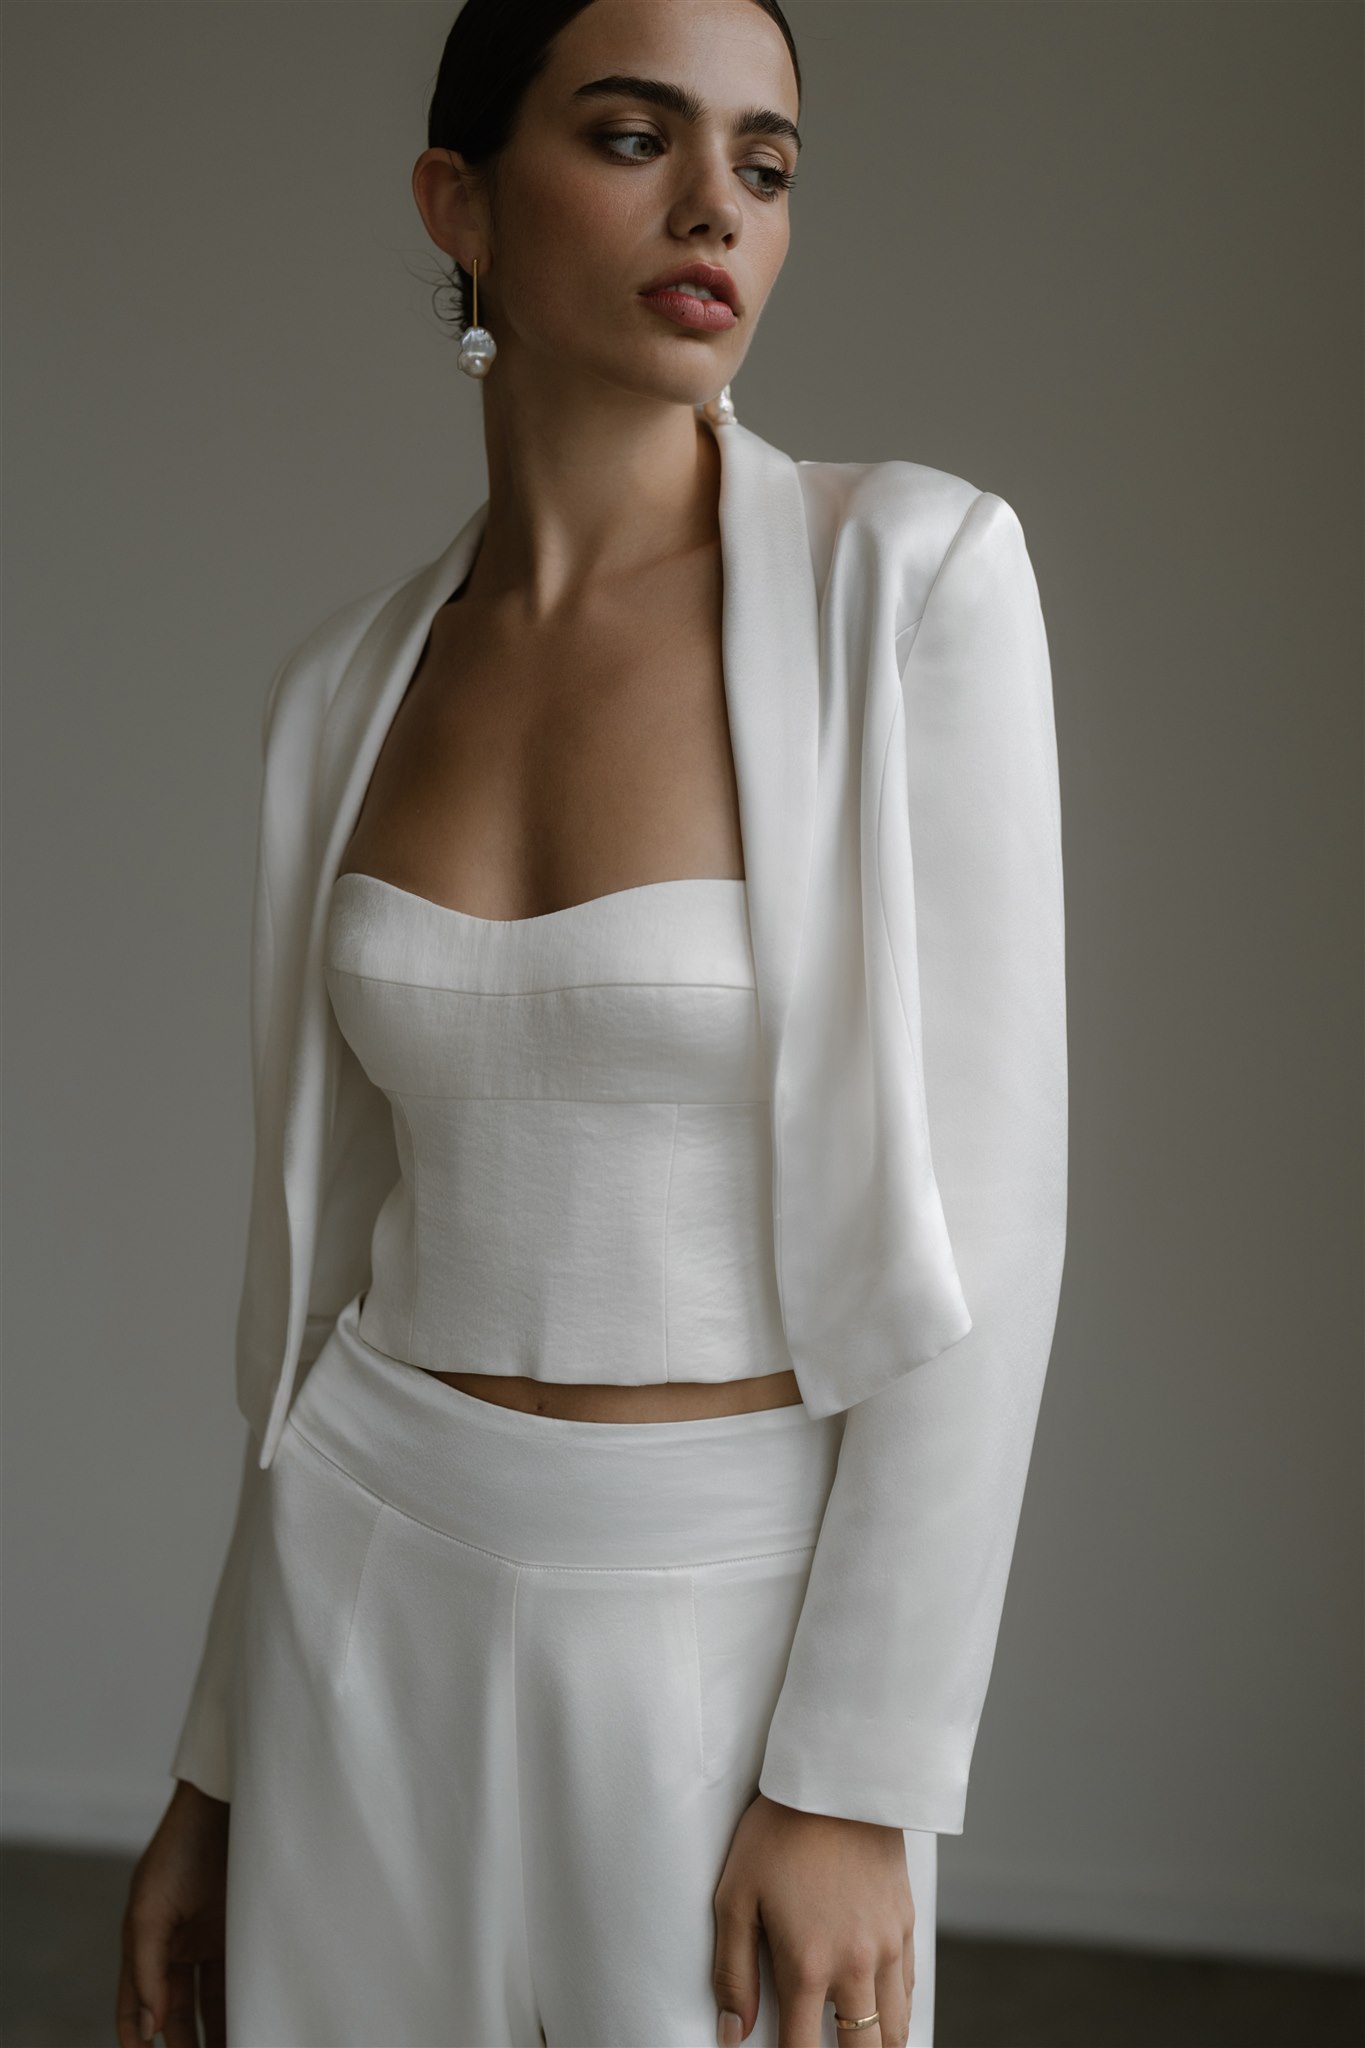 Hera Couture Hailey Wedding Dress Save 41% - Stillwhite